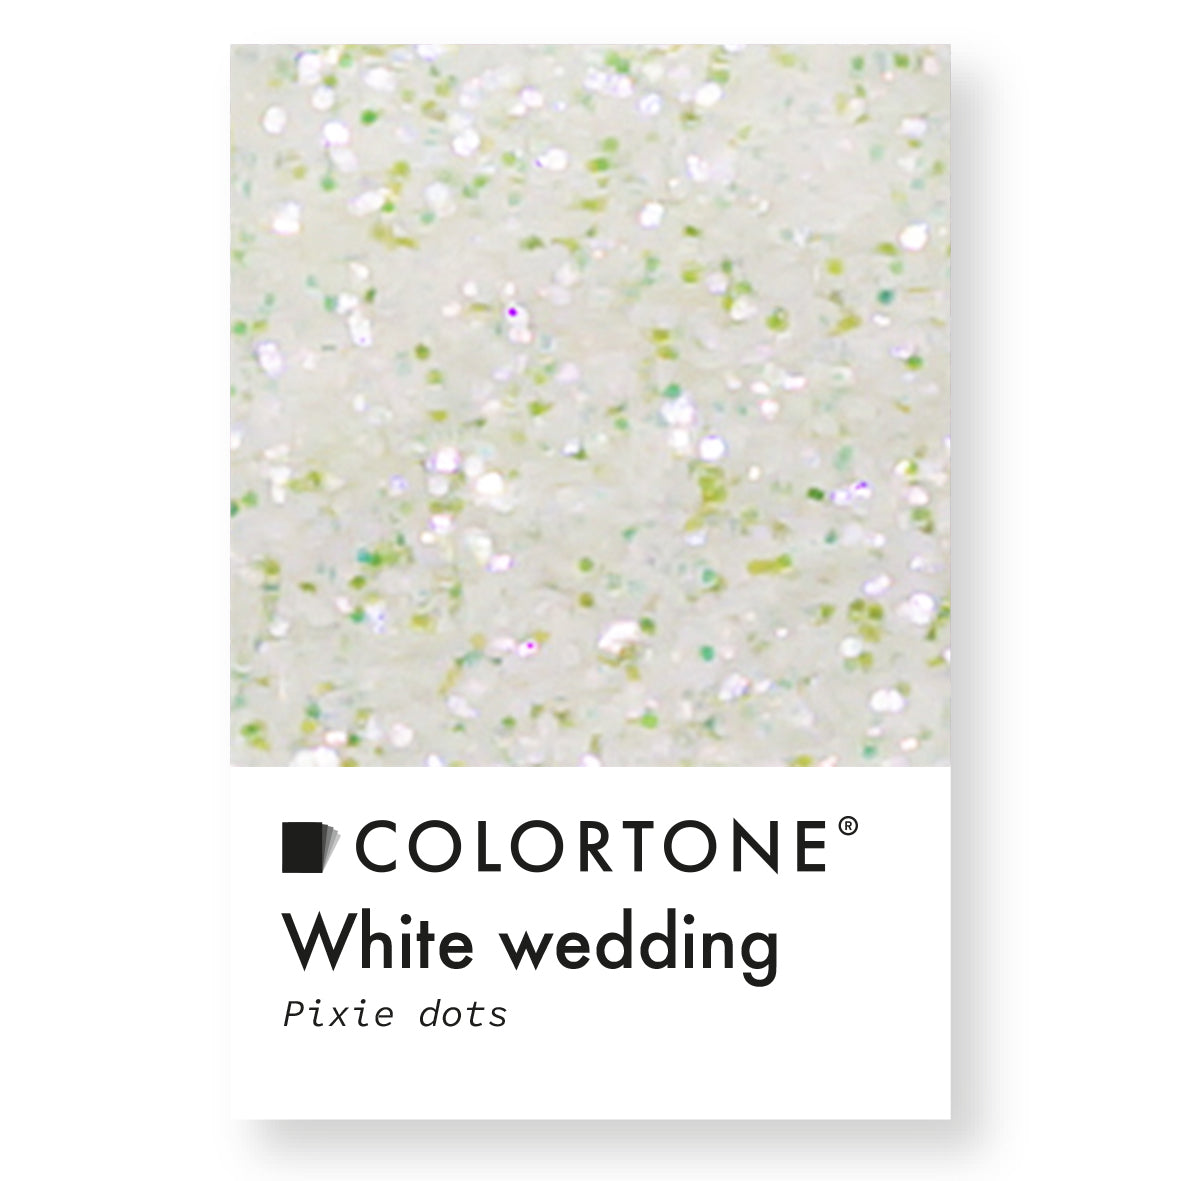 White Wedding - Pixie Dots